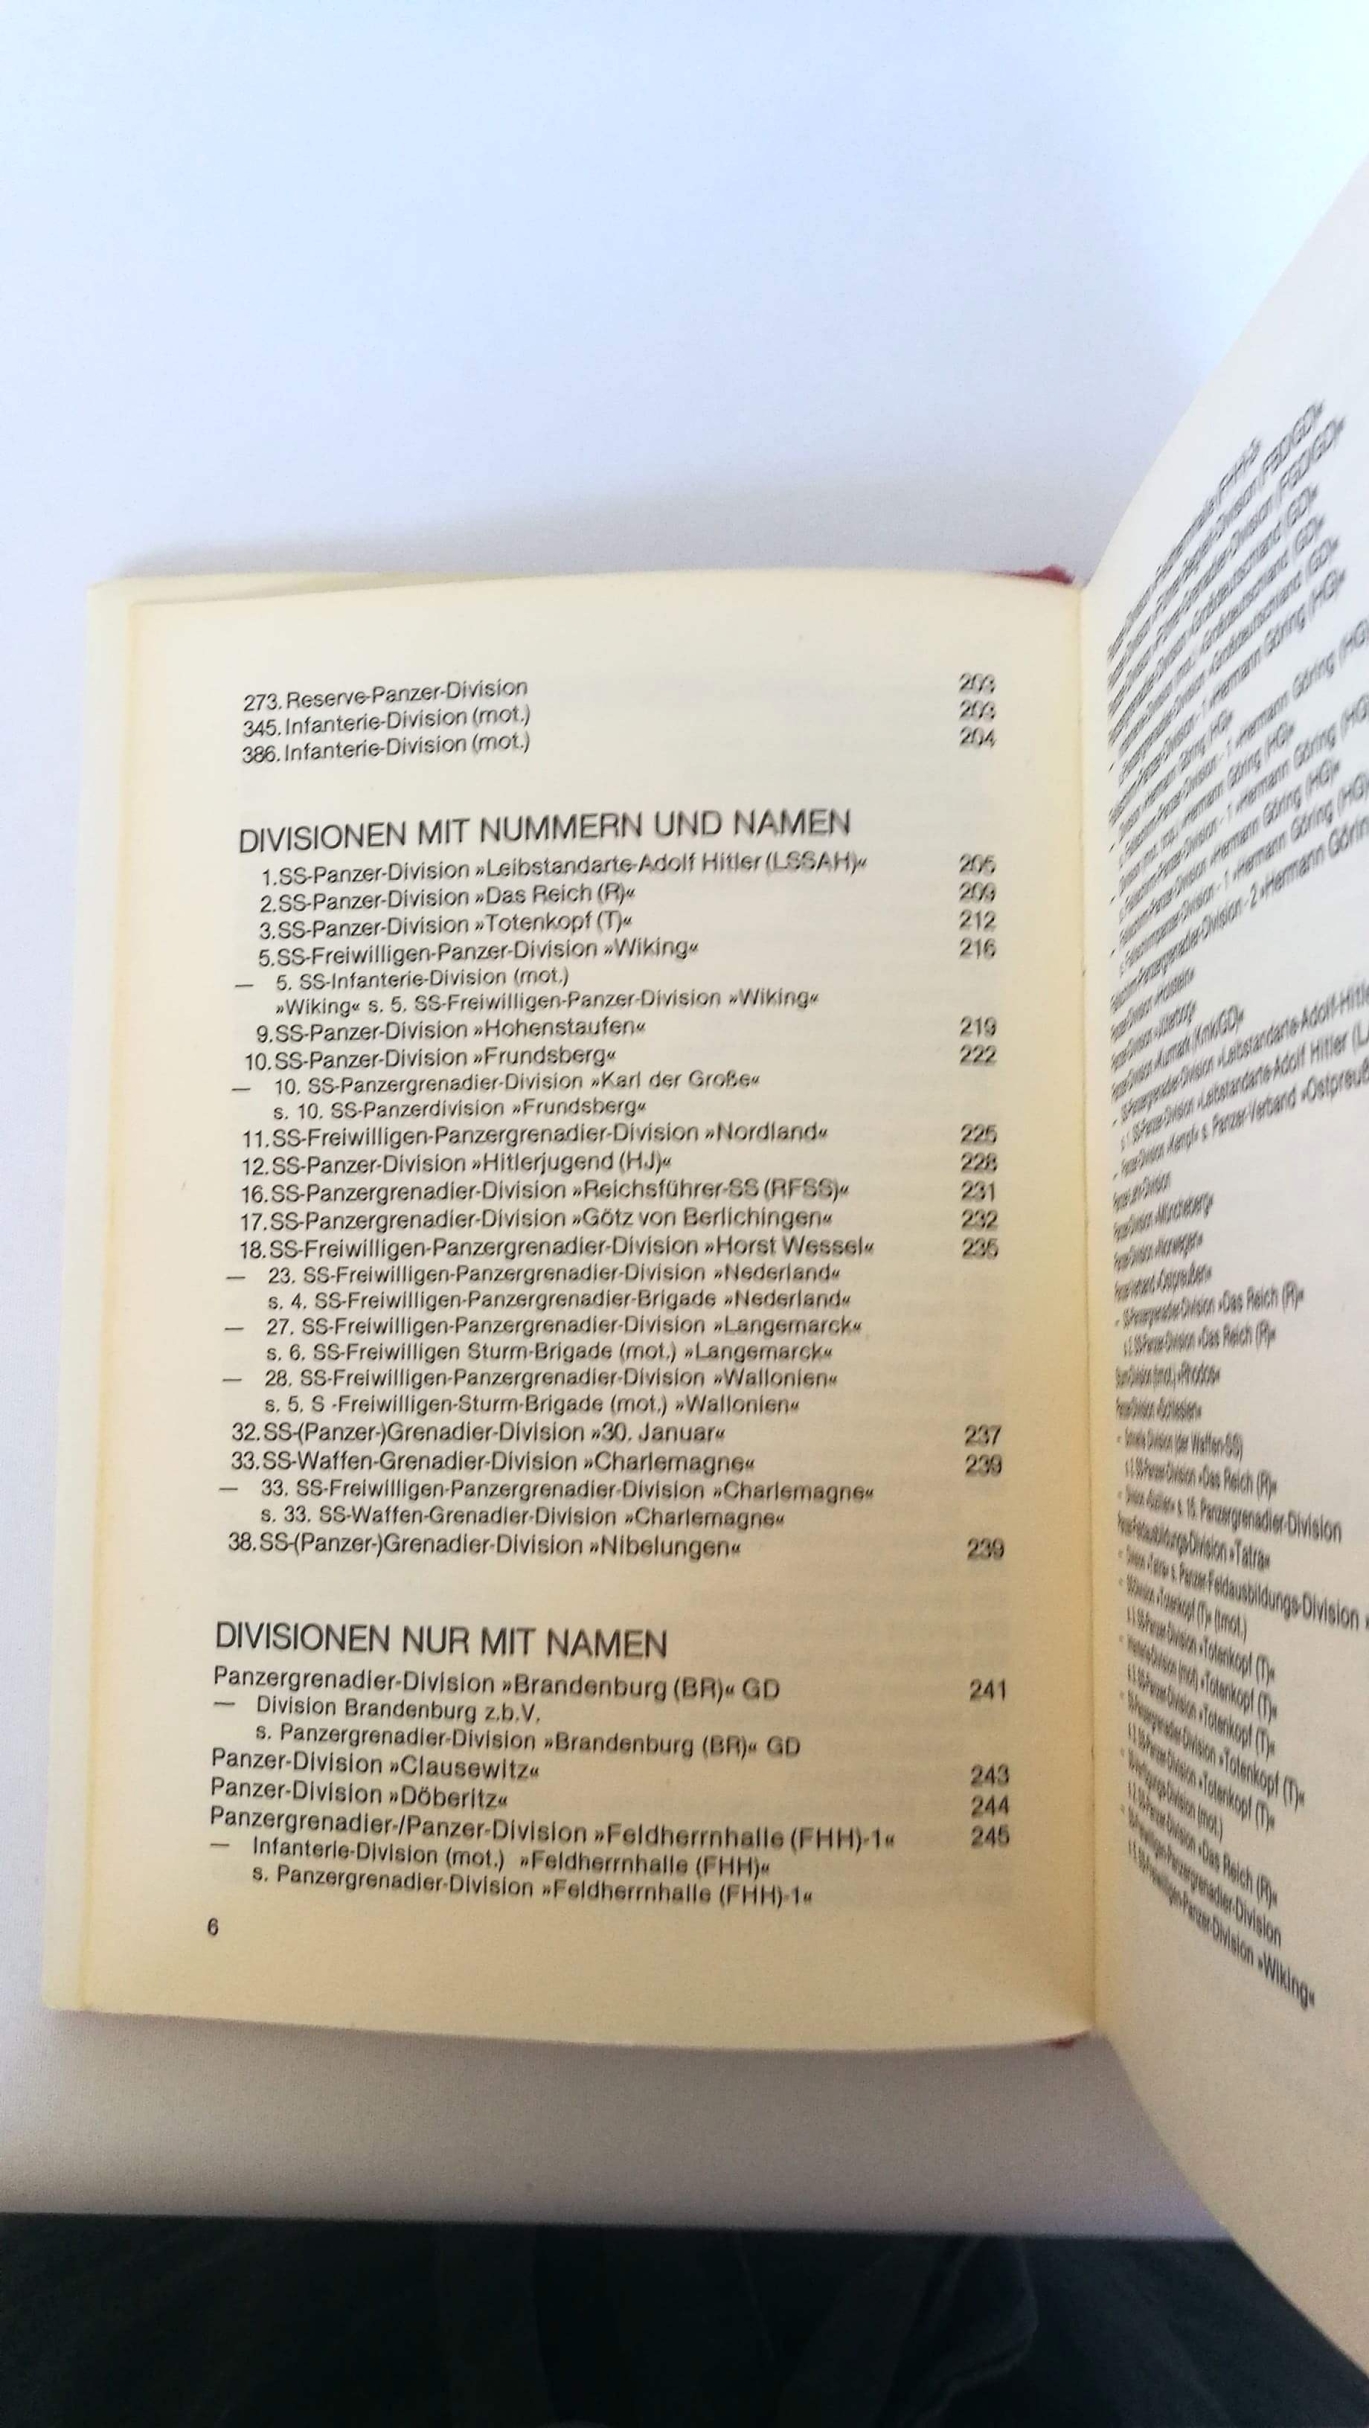 Stoves, Rolf (Verfasser): Die gepanzerten und motorisierten deutschen Grossverbände (Divisionen u. selbständige Brigaden) 1935 - 1945 / Rolf Stoves